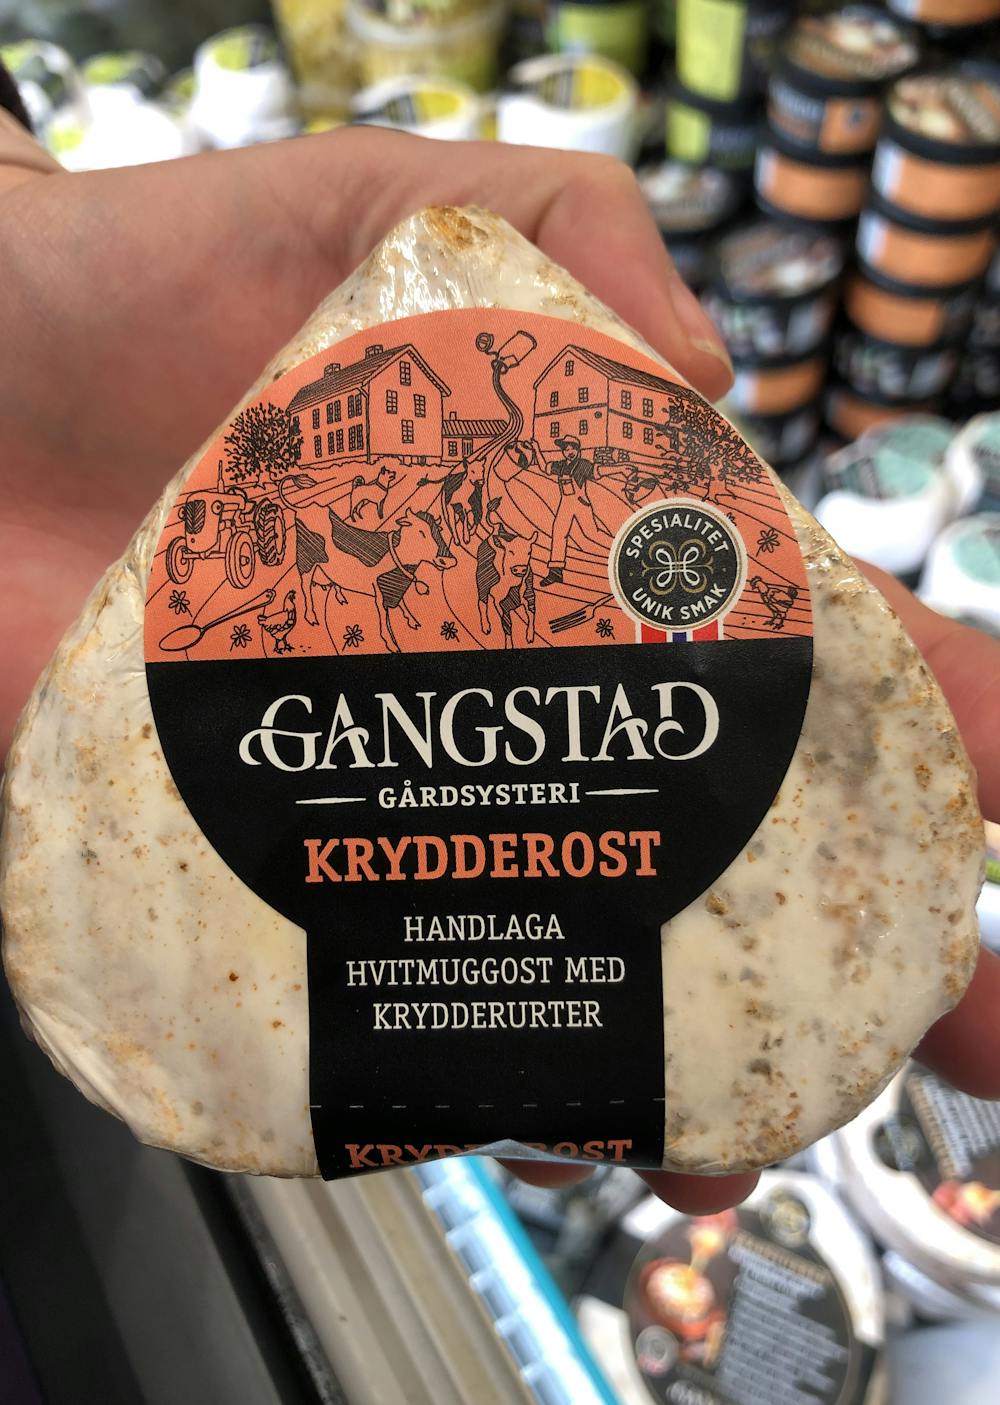 Gangstad Krydderost, Gangstad Gårdsysteri